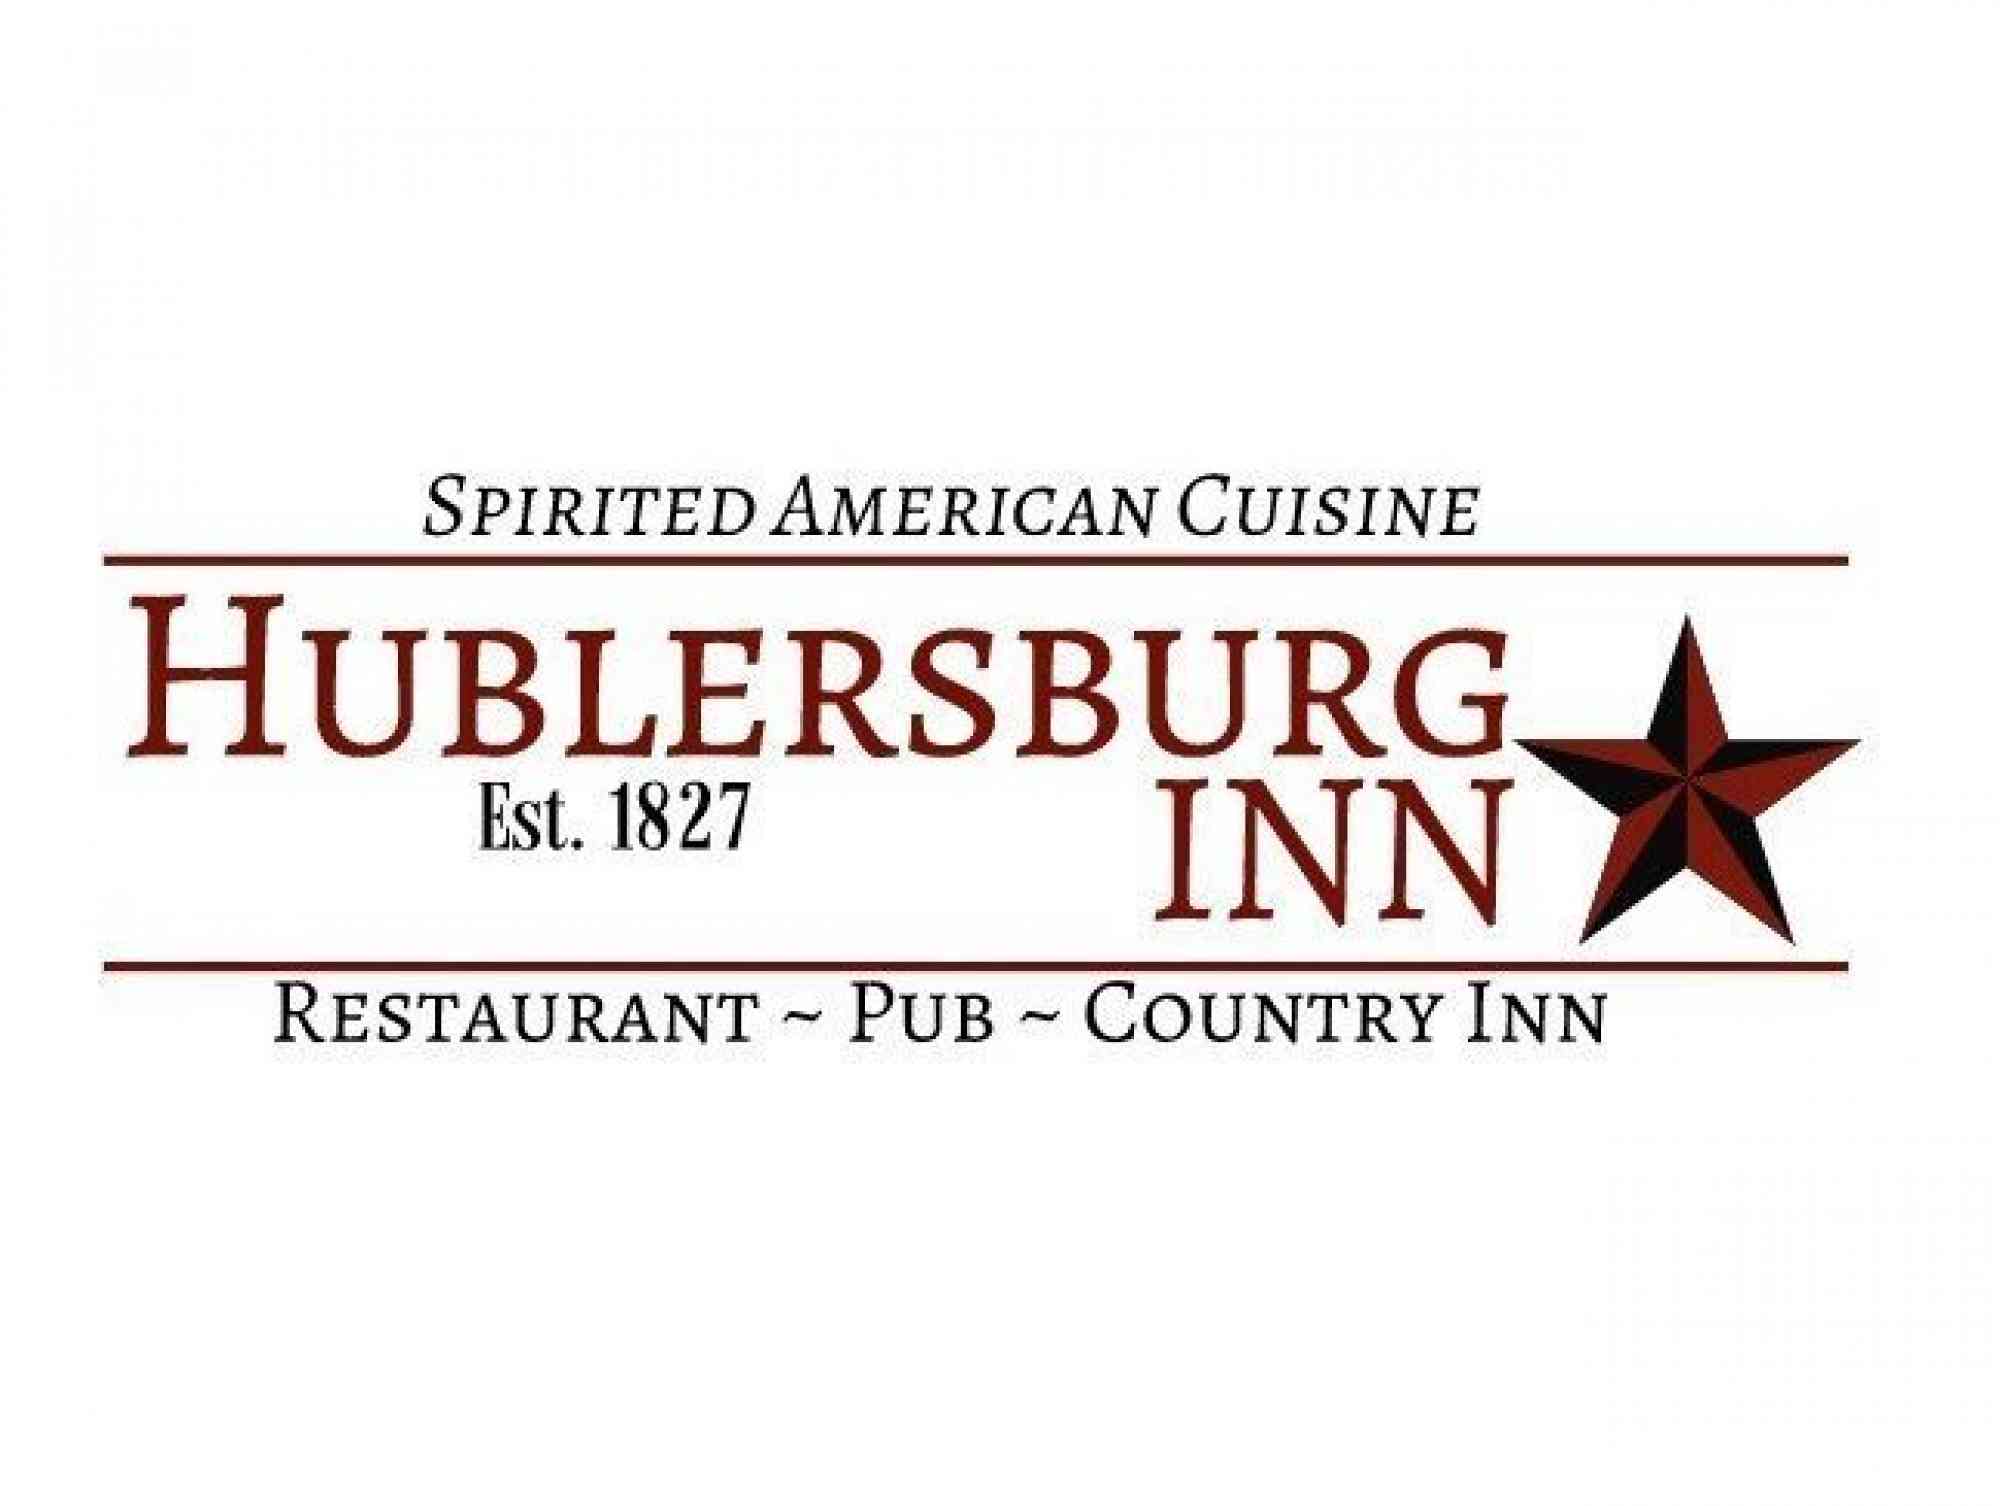 Hublersburg Inn pic screen shot